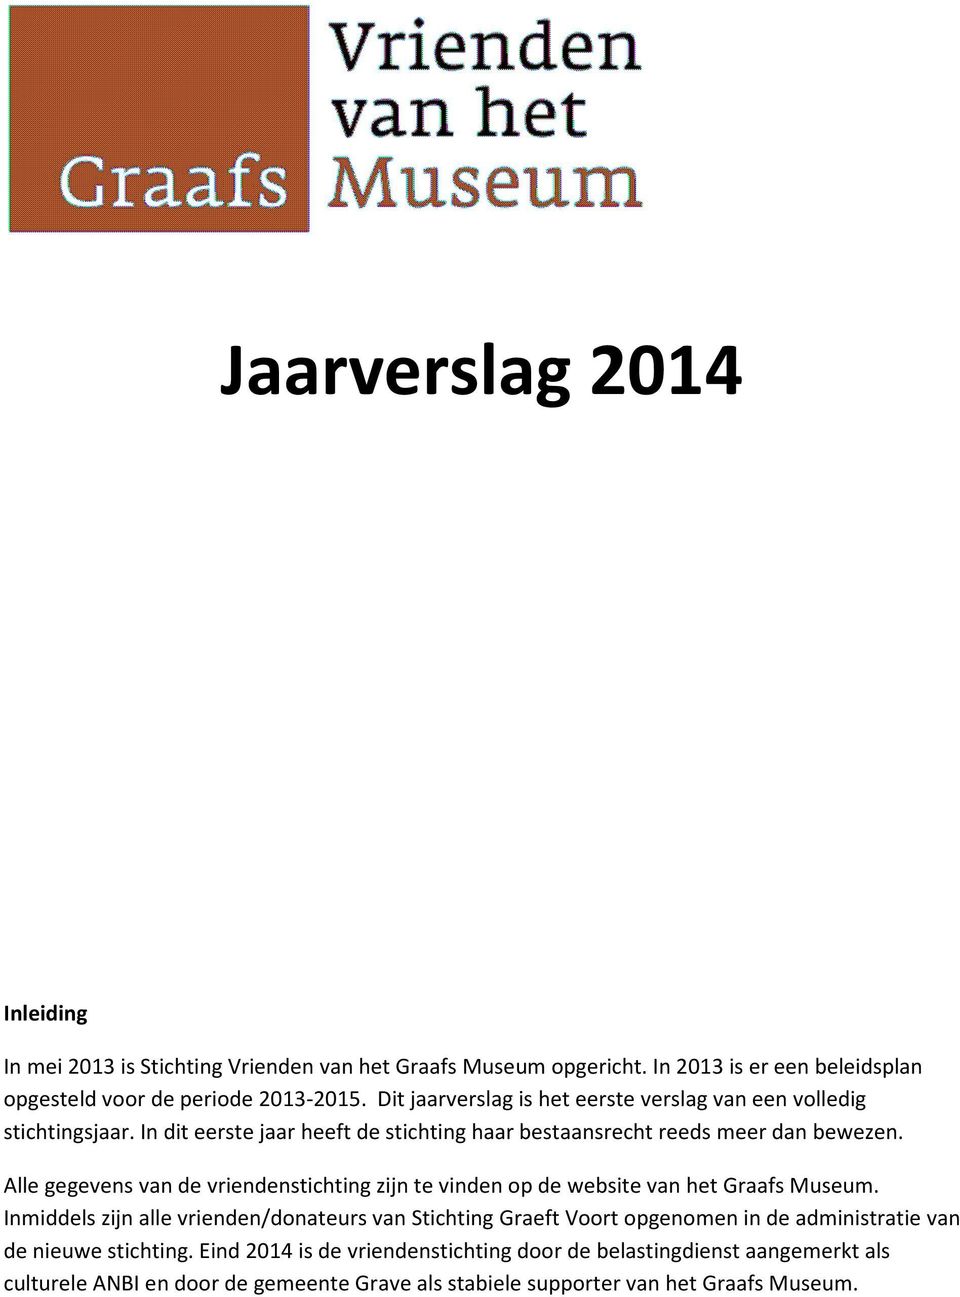 Alle gegevens van de vriendenstichting zijn te vinden op de website van het Graafs Museum.